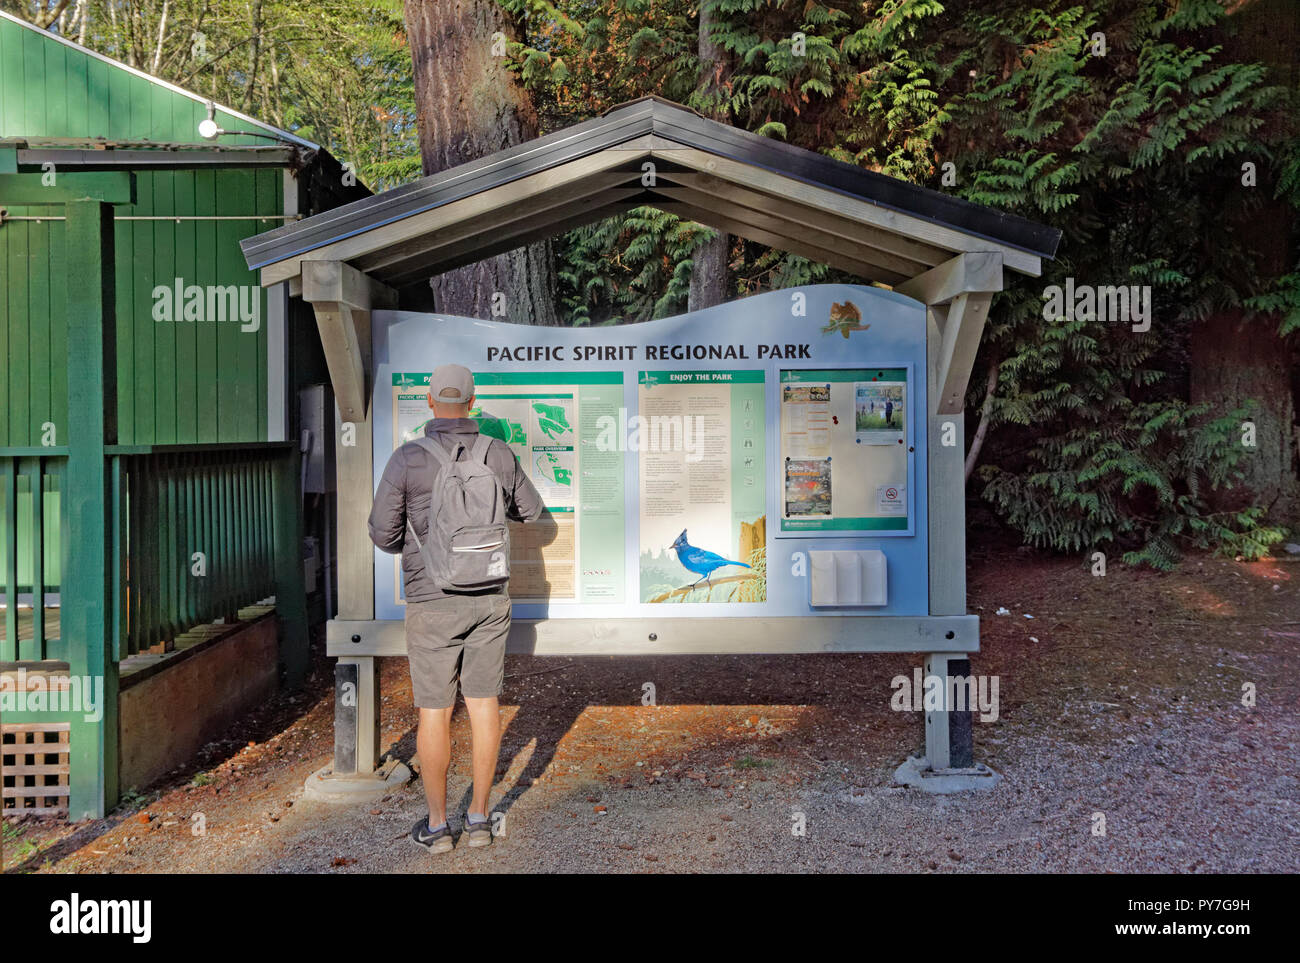 Uomo che guarda la mappa di spirito pacifico parco regionale e preservare la natura presso il centro informativo del Parco, Vancouver, BC, Canada Foto Stock